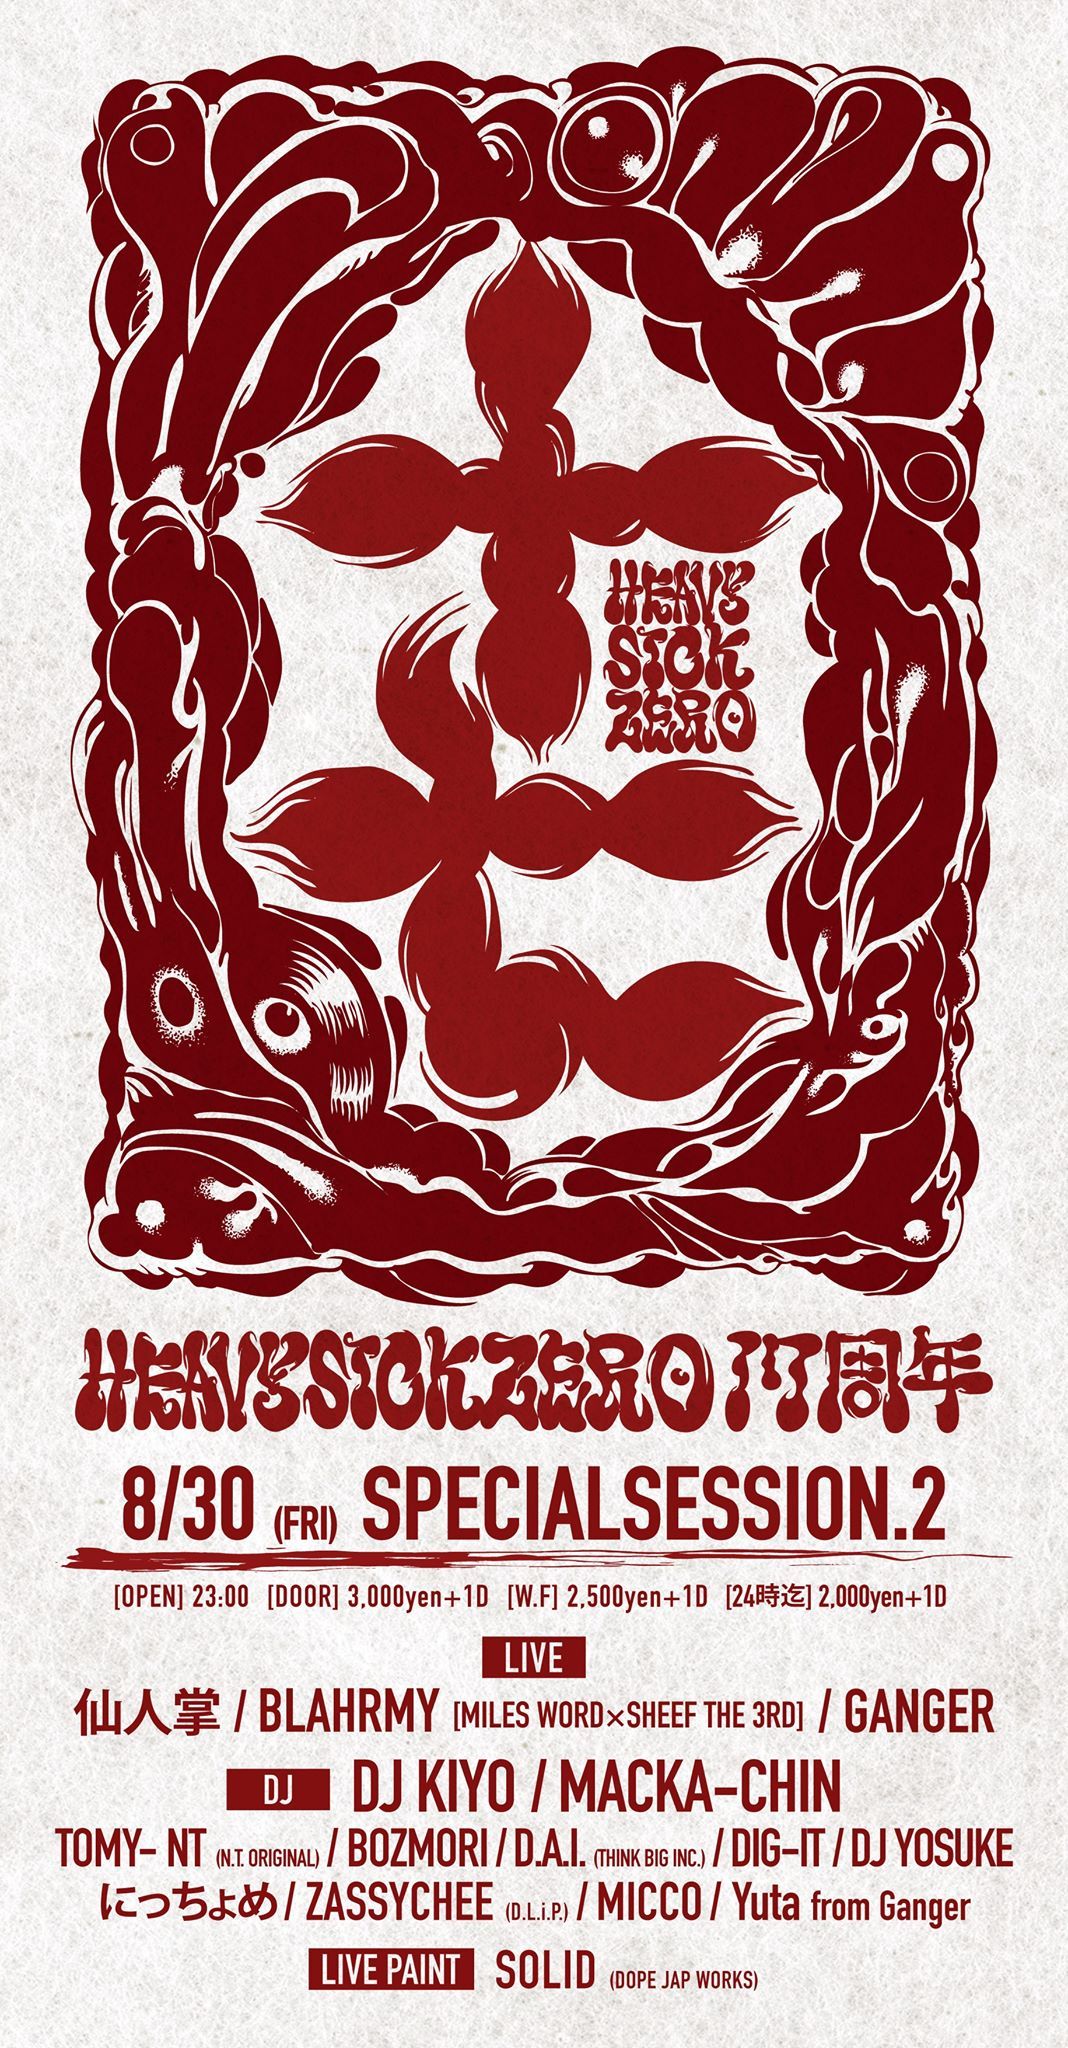 heavysick ZERO 17th Anniversary 【Special Session.2】